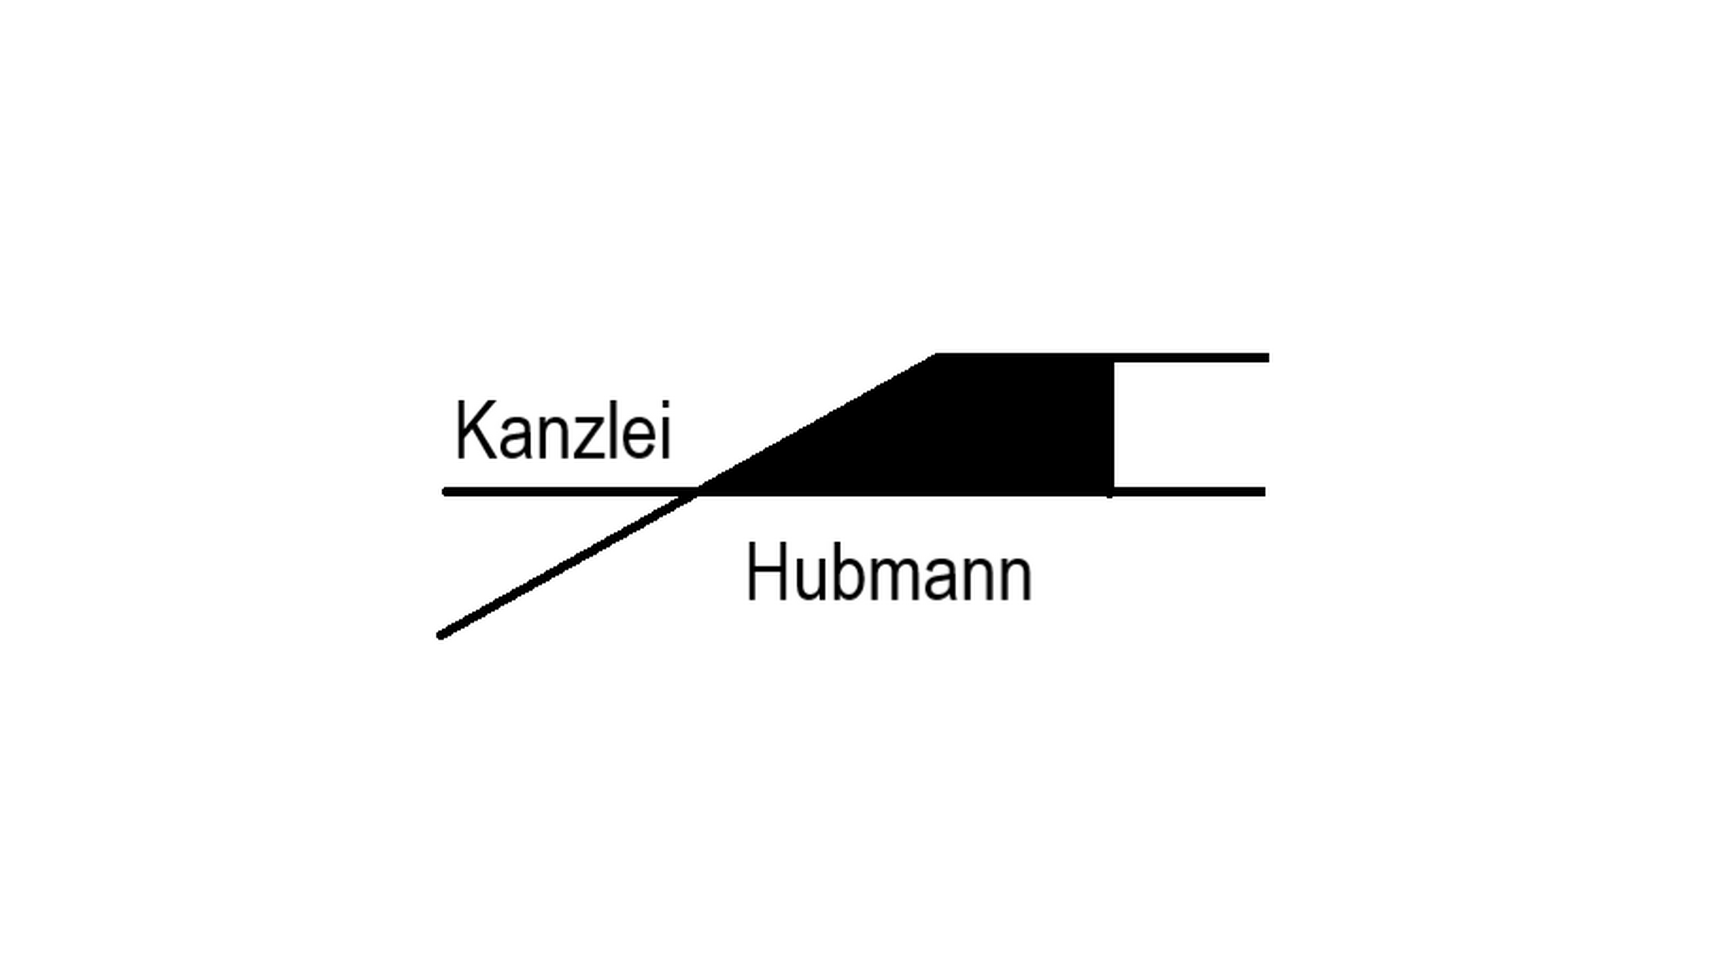 Kanzlei Hubmann, Kaiserstraße 23 in Nürnberg